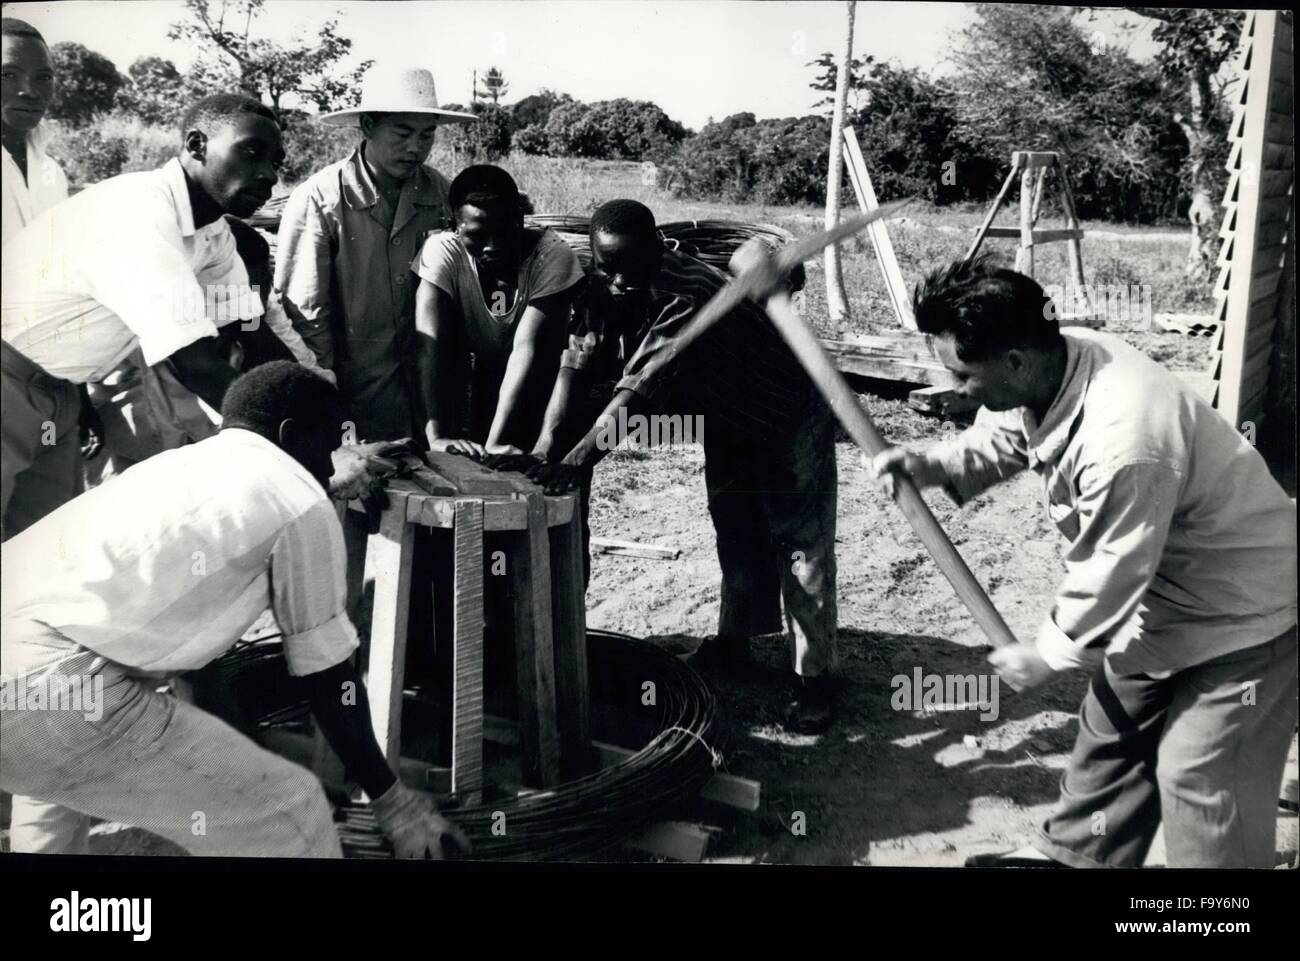 1972 - Les chevaux de travail pour un cheval de Troie : Six mille ouvriers et techniciens chinois sont en Tanzanie pour aider à renforcer les 1 056 milles de la Tanzanie - Fer zambien. Credit : Mohamed Amin. © Keystone Photos USA/ZUMAPRESS.com/Alamy Live News Banque D'Images